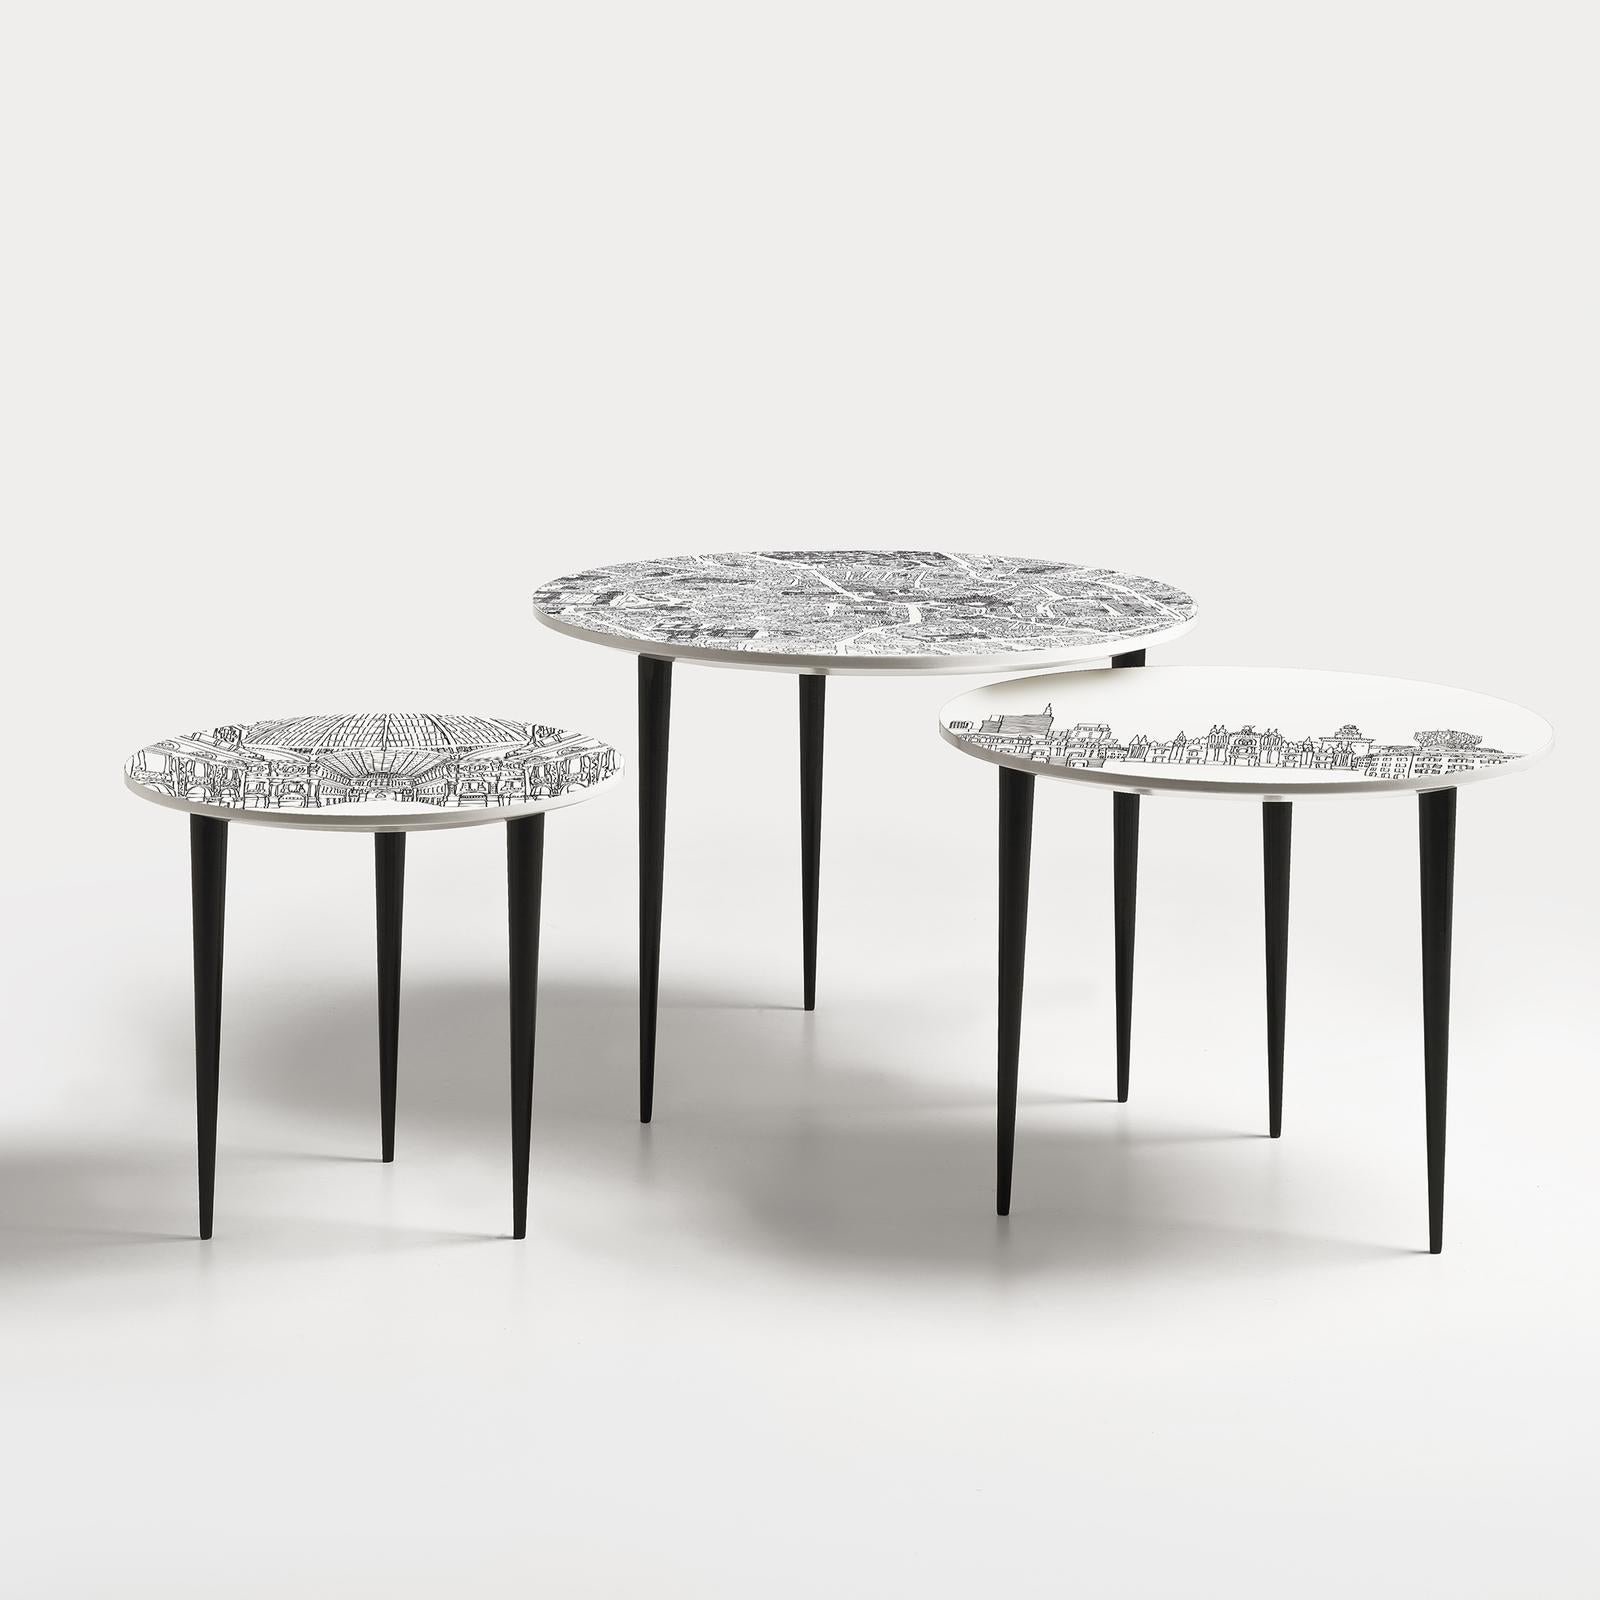 Conçues par Anna Sutor pour Extroverso, ces tables gigognes exclusives sont fabriquées en bois avec une finition brillante et présentent des pieds coniques noirs avec des plateaux ronds blancs accentués par des illustrations imprimées des paysages